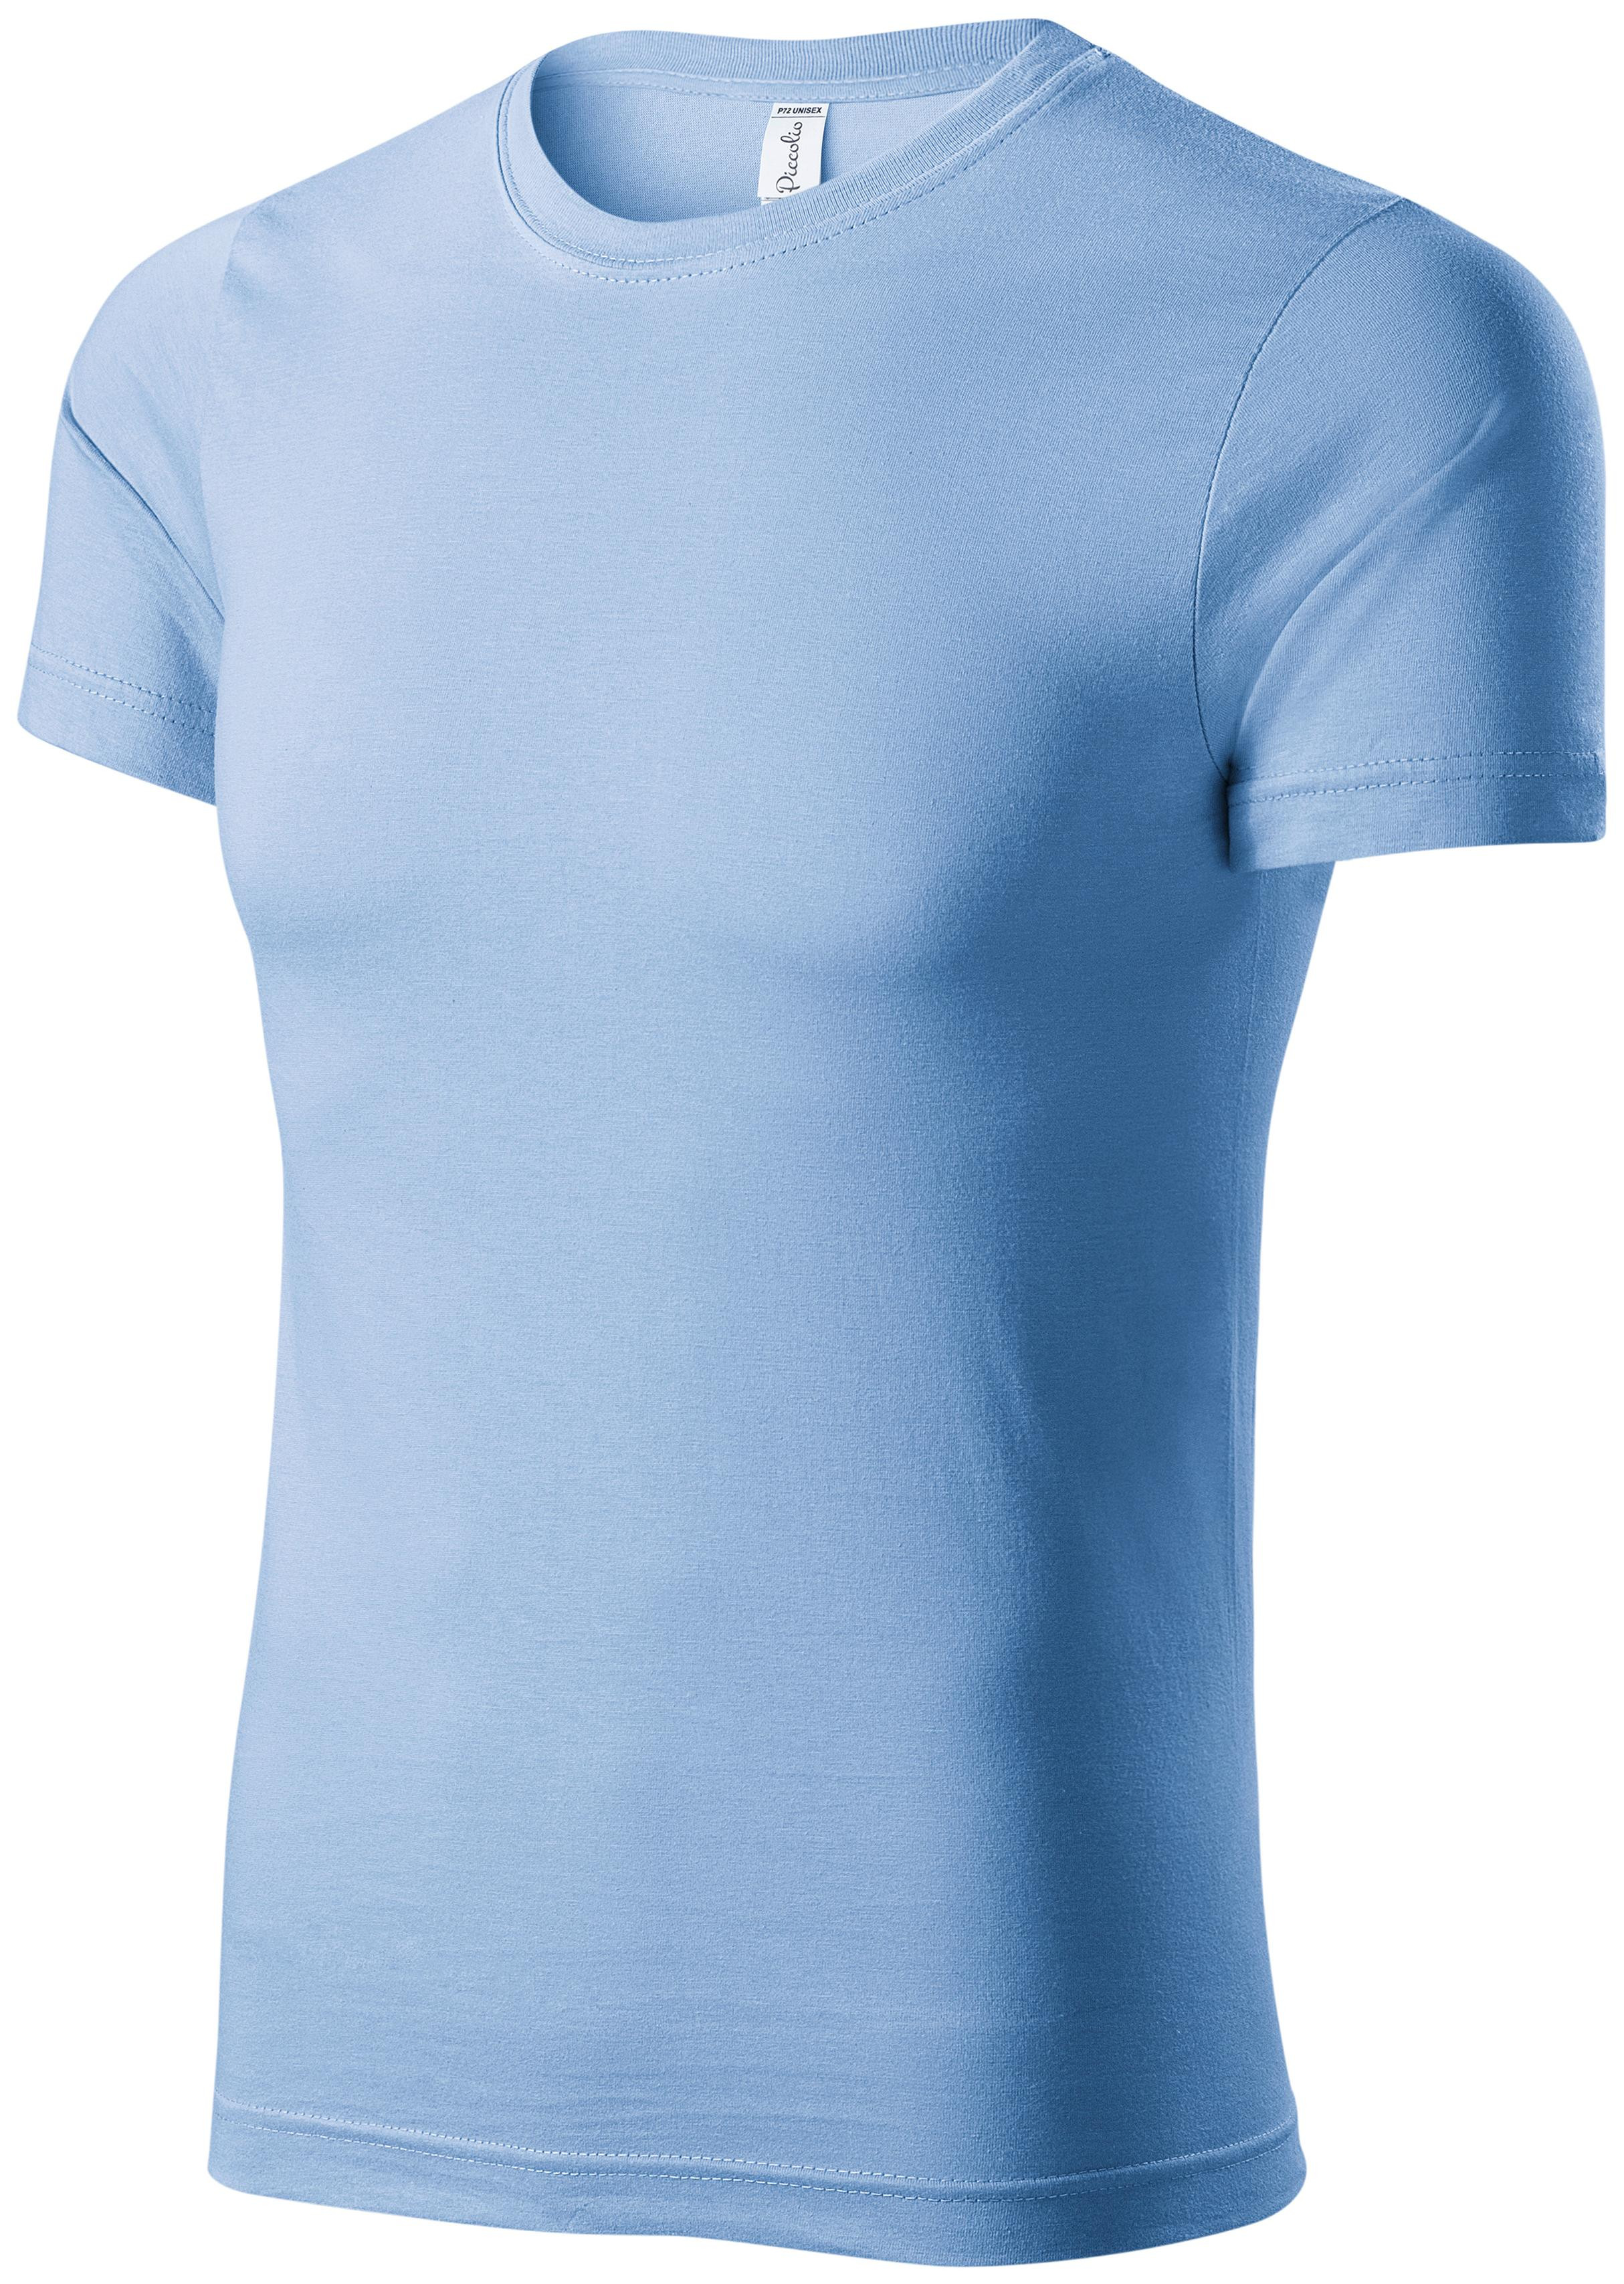 Detské ľahké tričko, nebeská modrá, 158cm / 12rokov